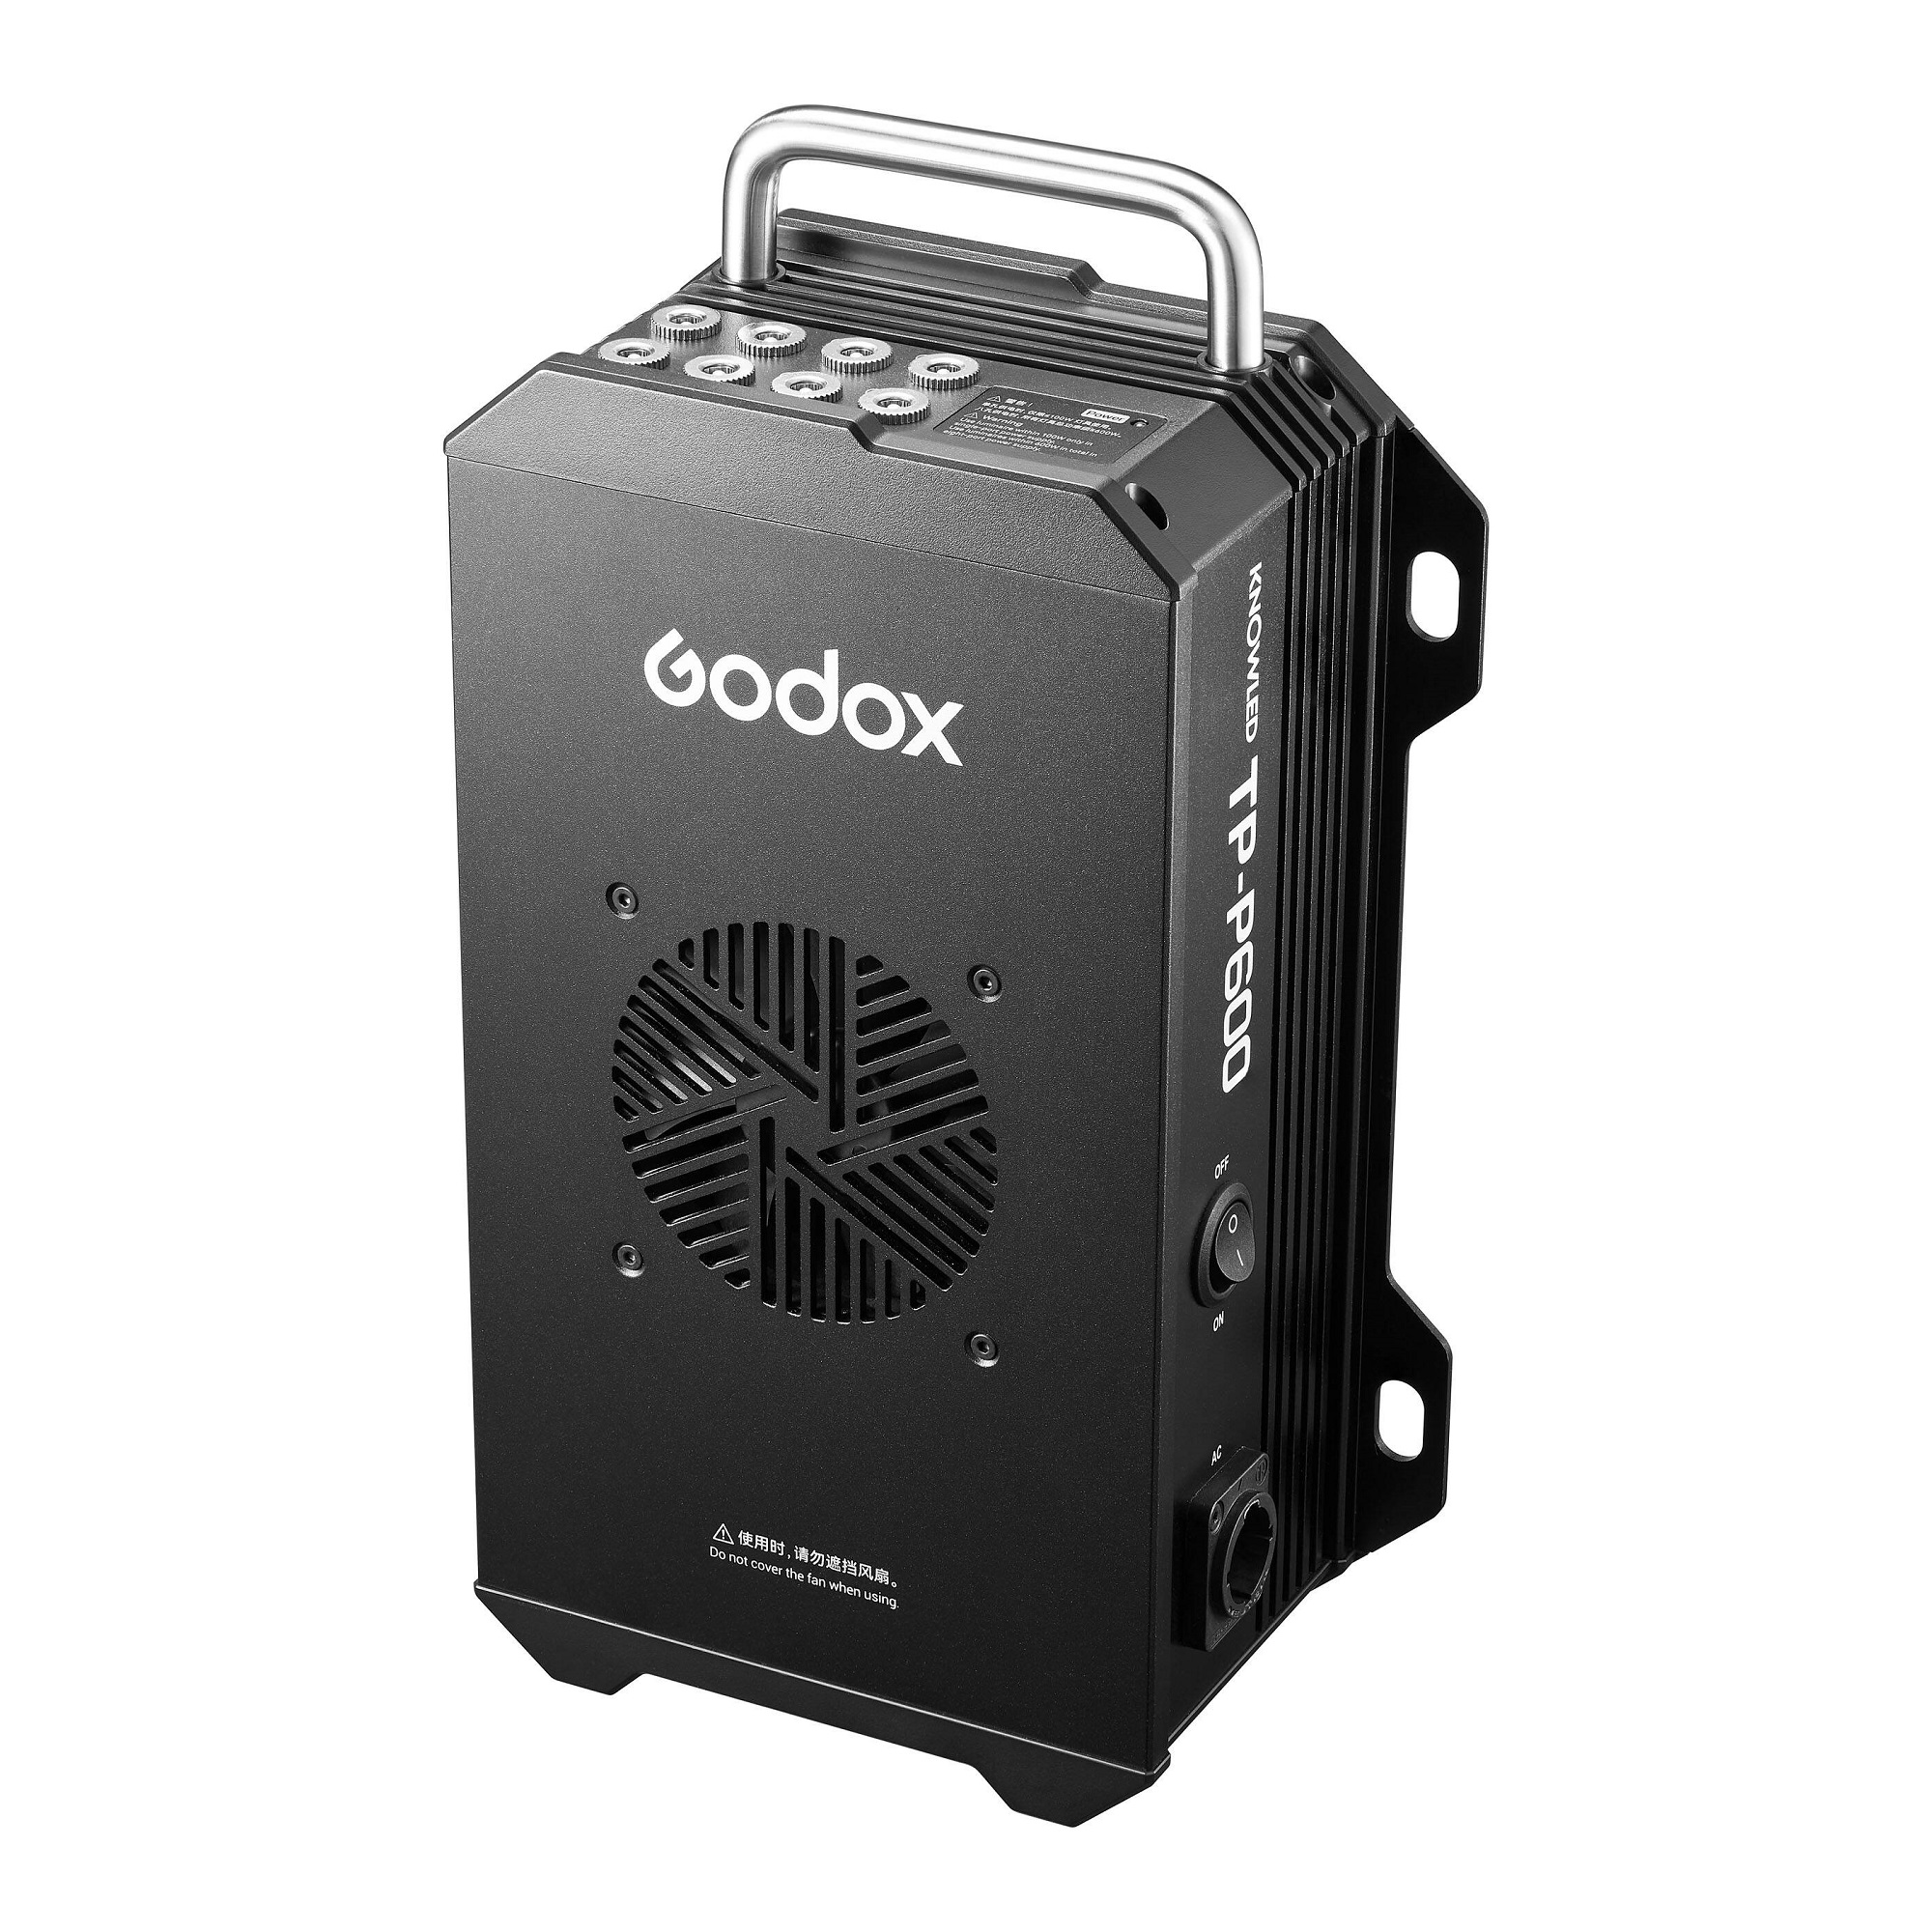    Godox Knowled TP-P600KIT   Ultra-mart